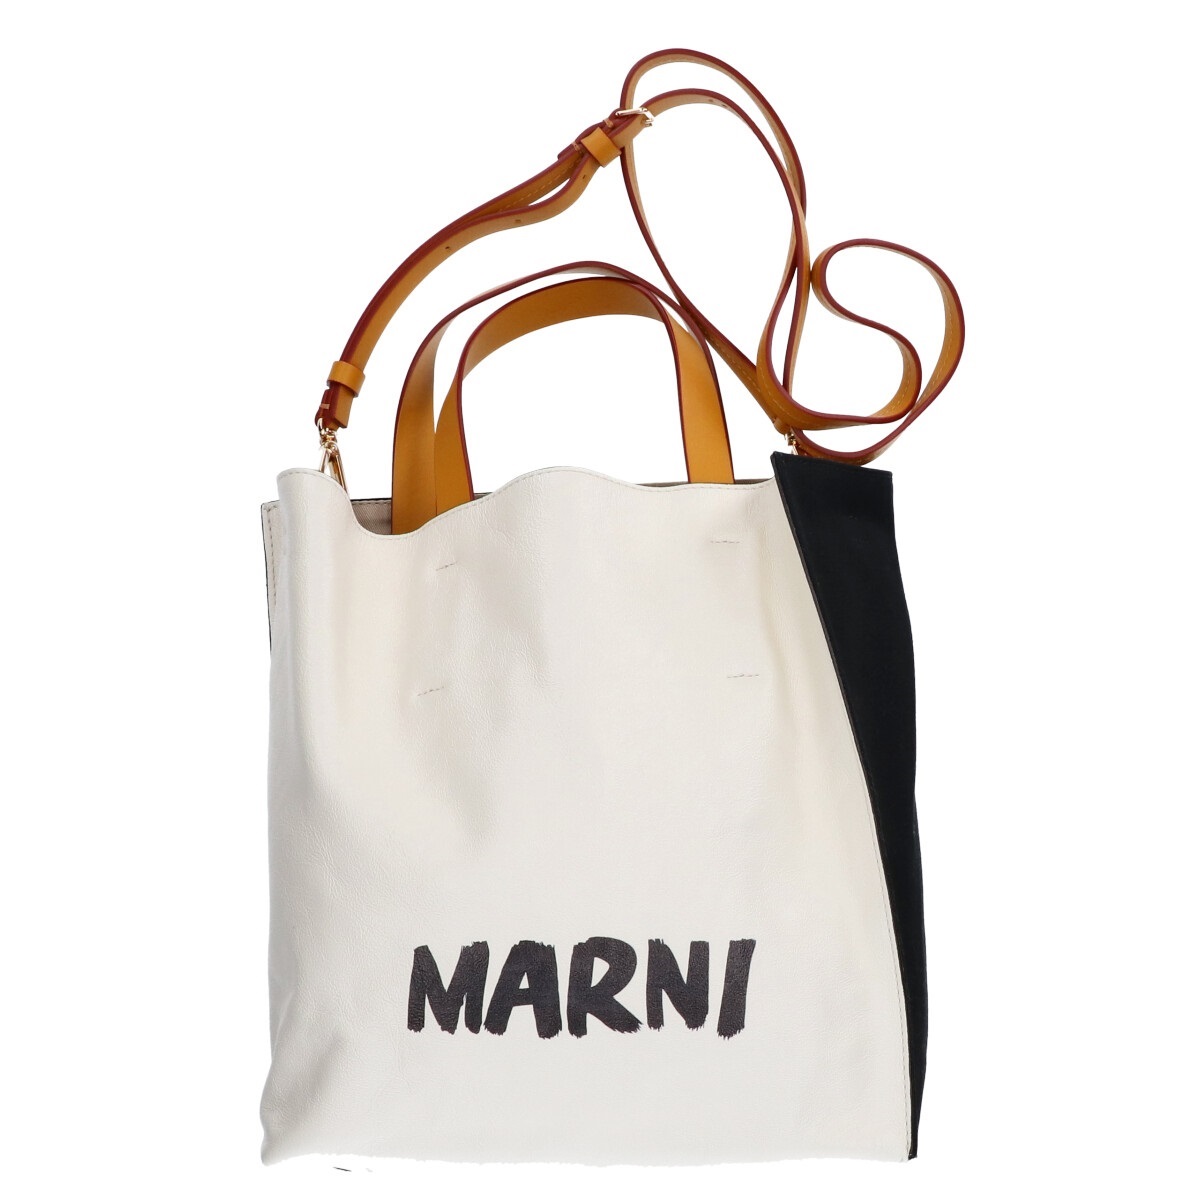 マルニのLOGO MUSEO レザー キャンバス グラフィックロゴ トートバッグの買取実績です。